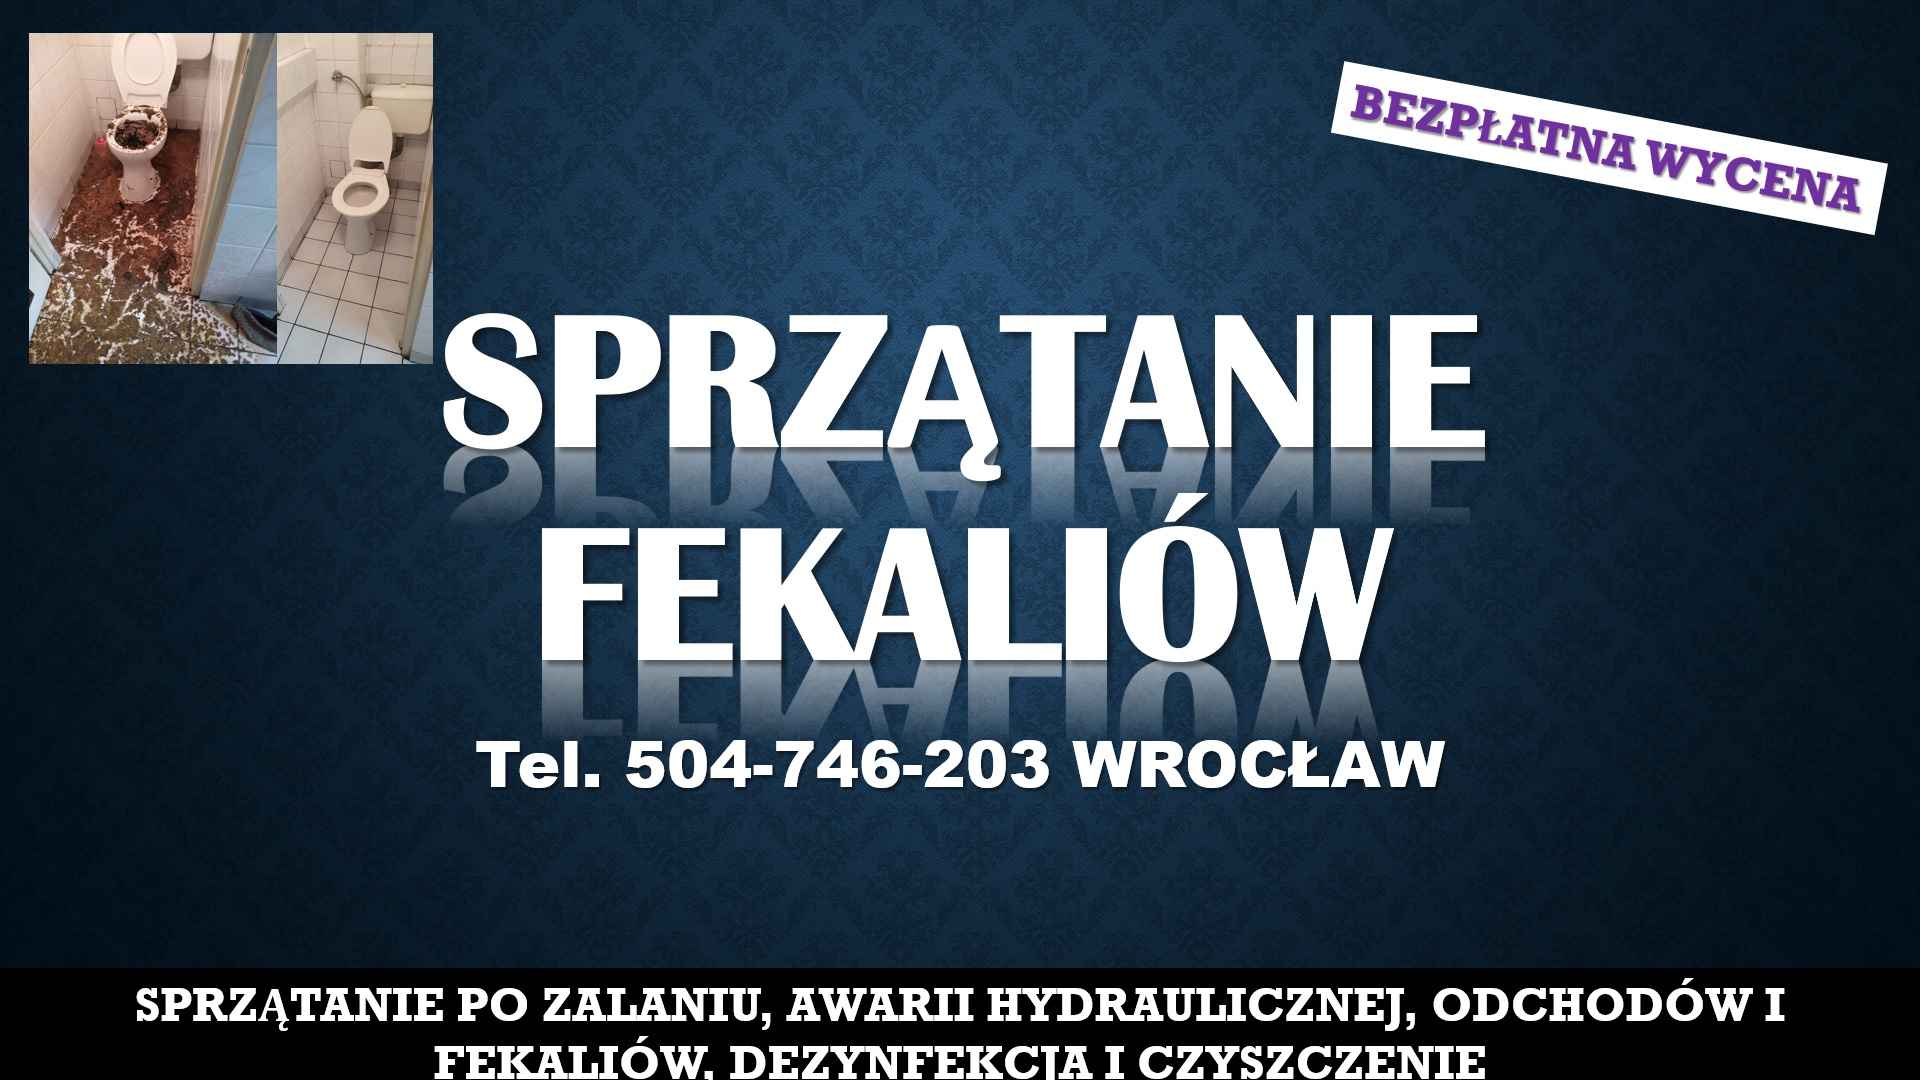 Sprzątanie fekaliów Wrocław, tel. 504-746-203. Po zalaniu kanalizacji, Psie Pole - zdjęcie 1